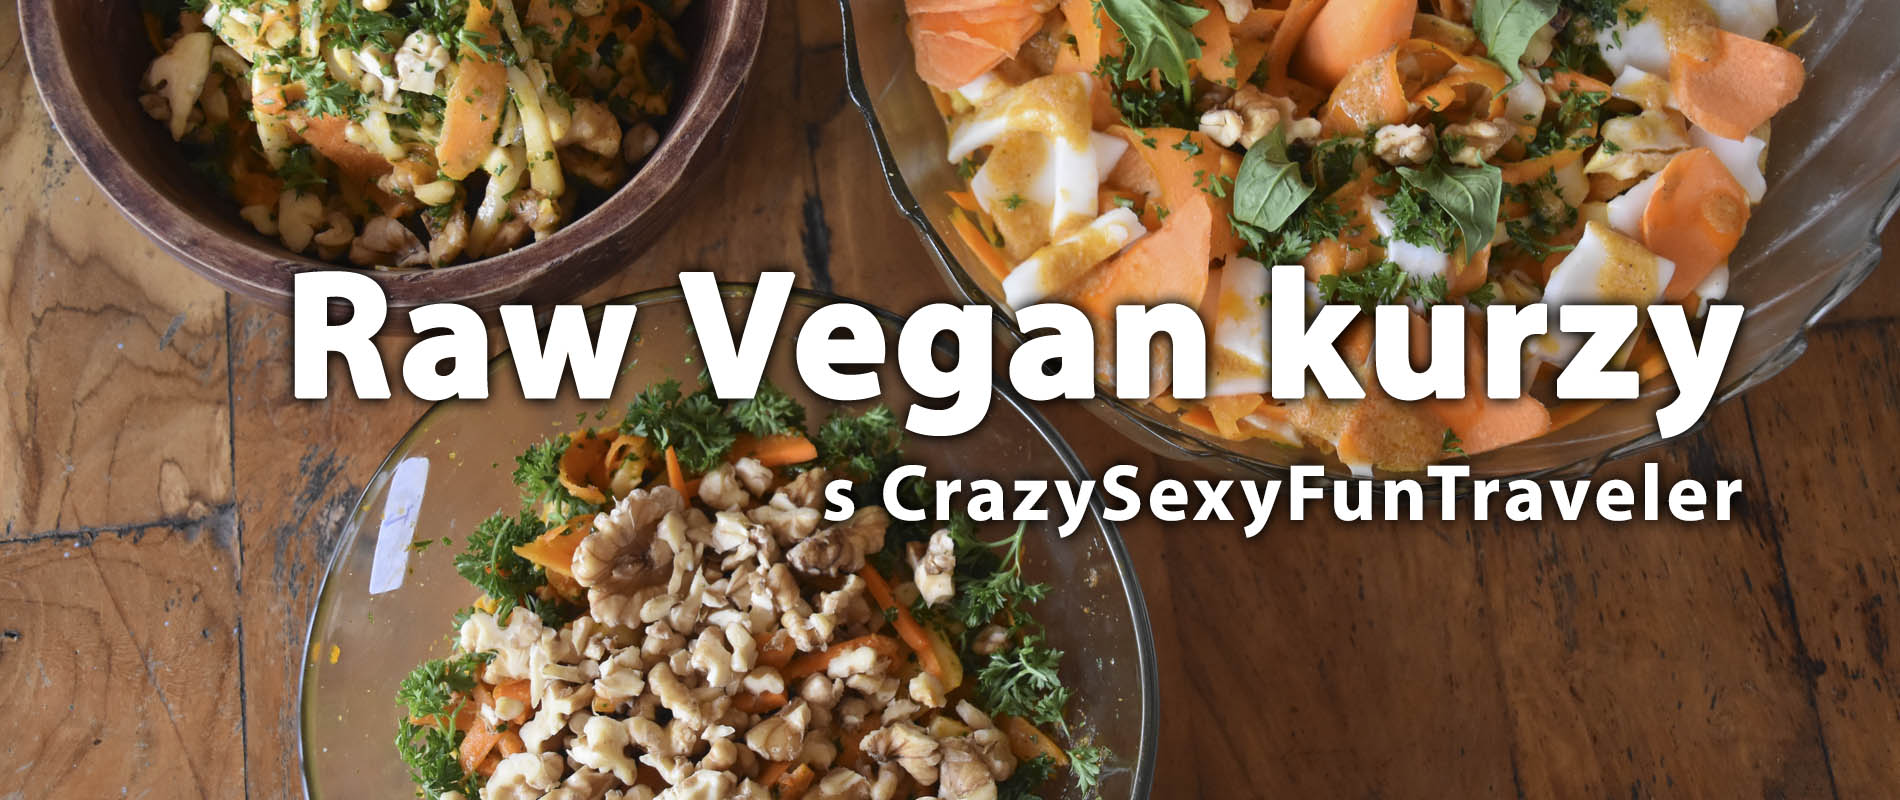 raw vegan kurzy s crazysexyfuntraveler